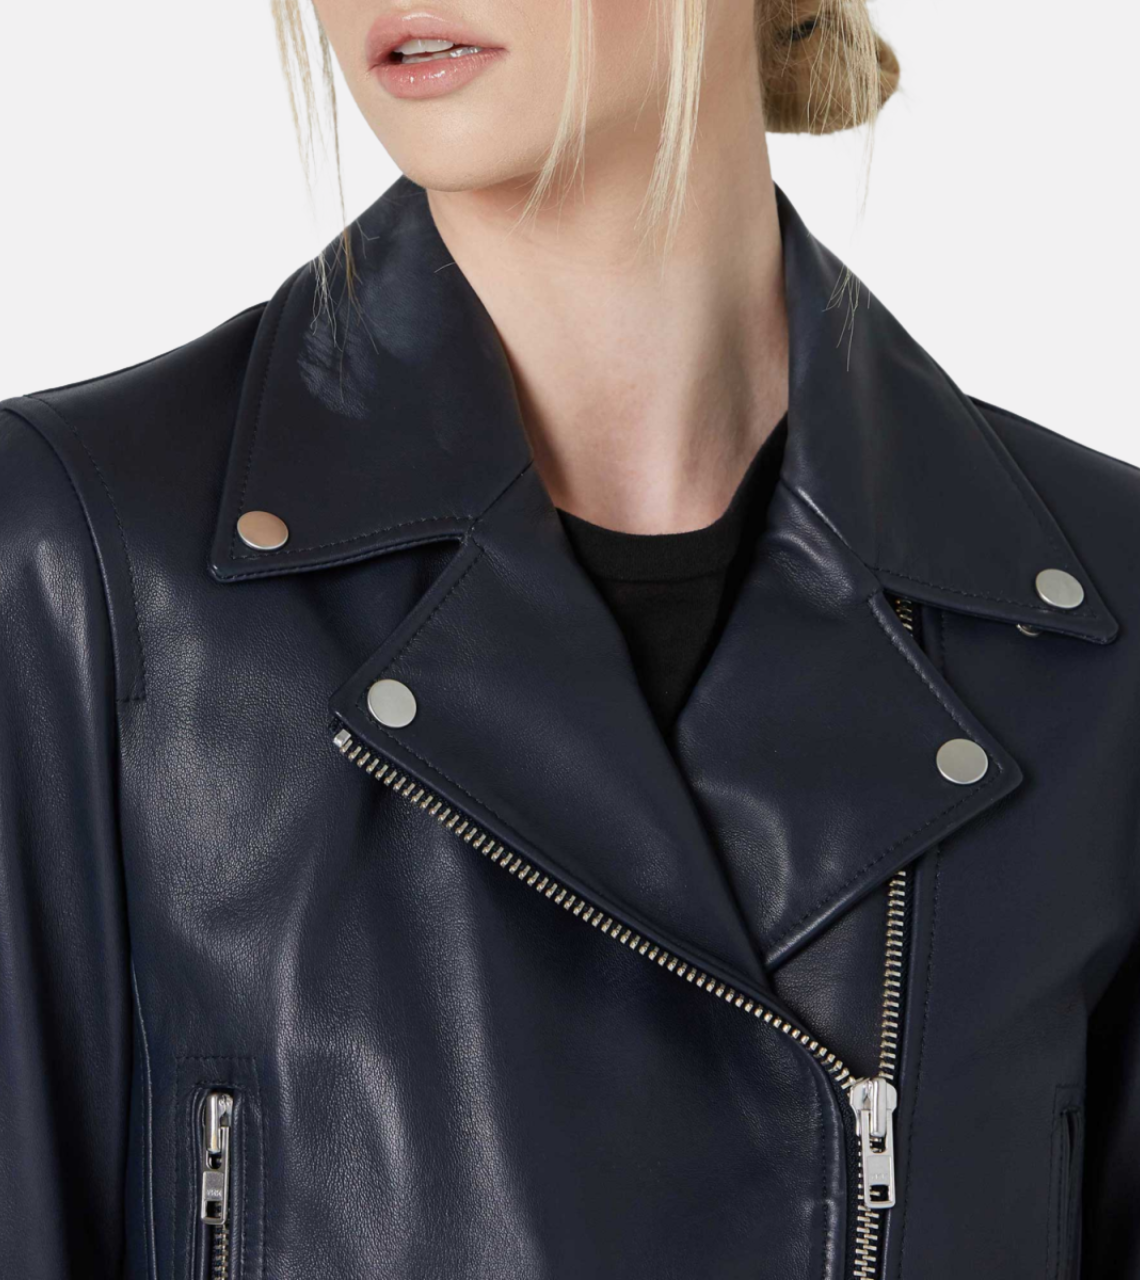 Vatico Blue Women's Biker Leather Jacket Zipper